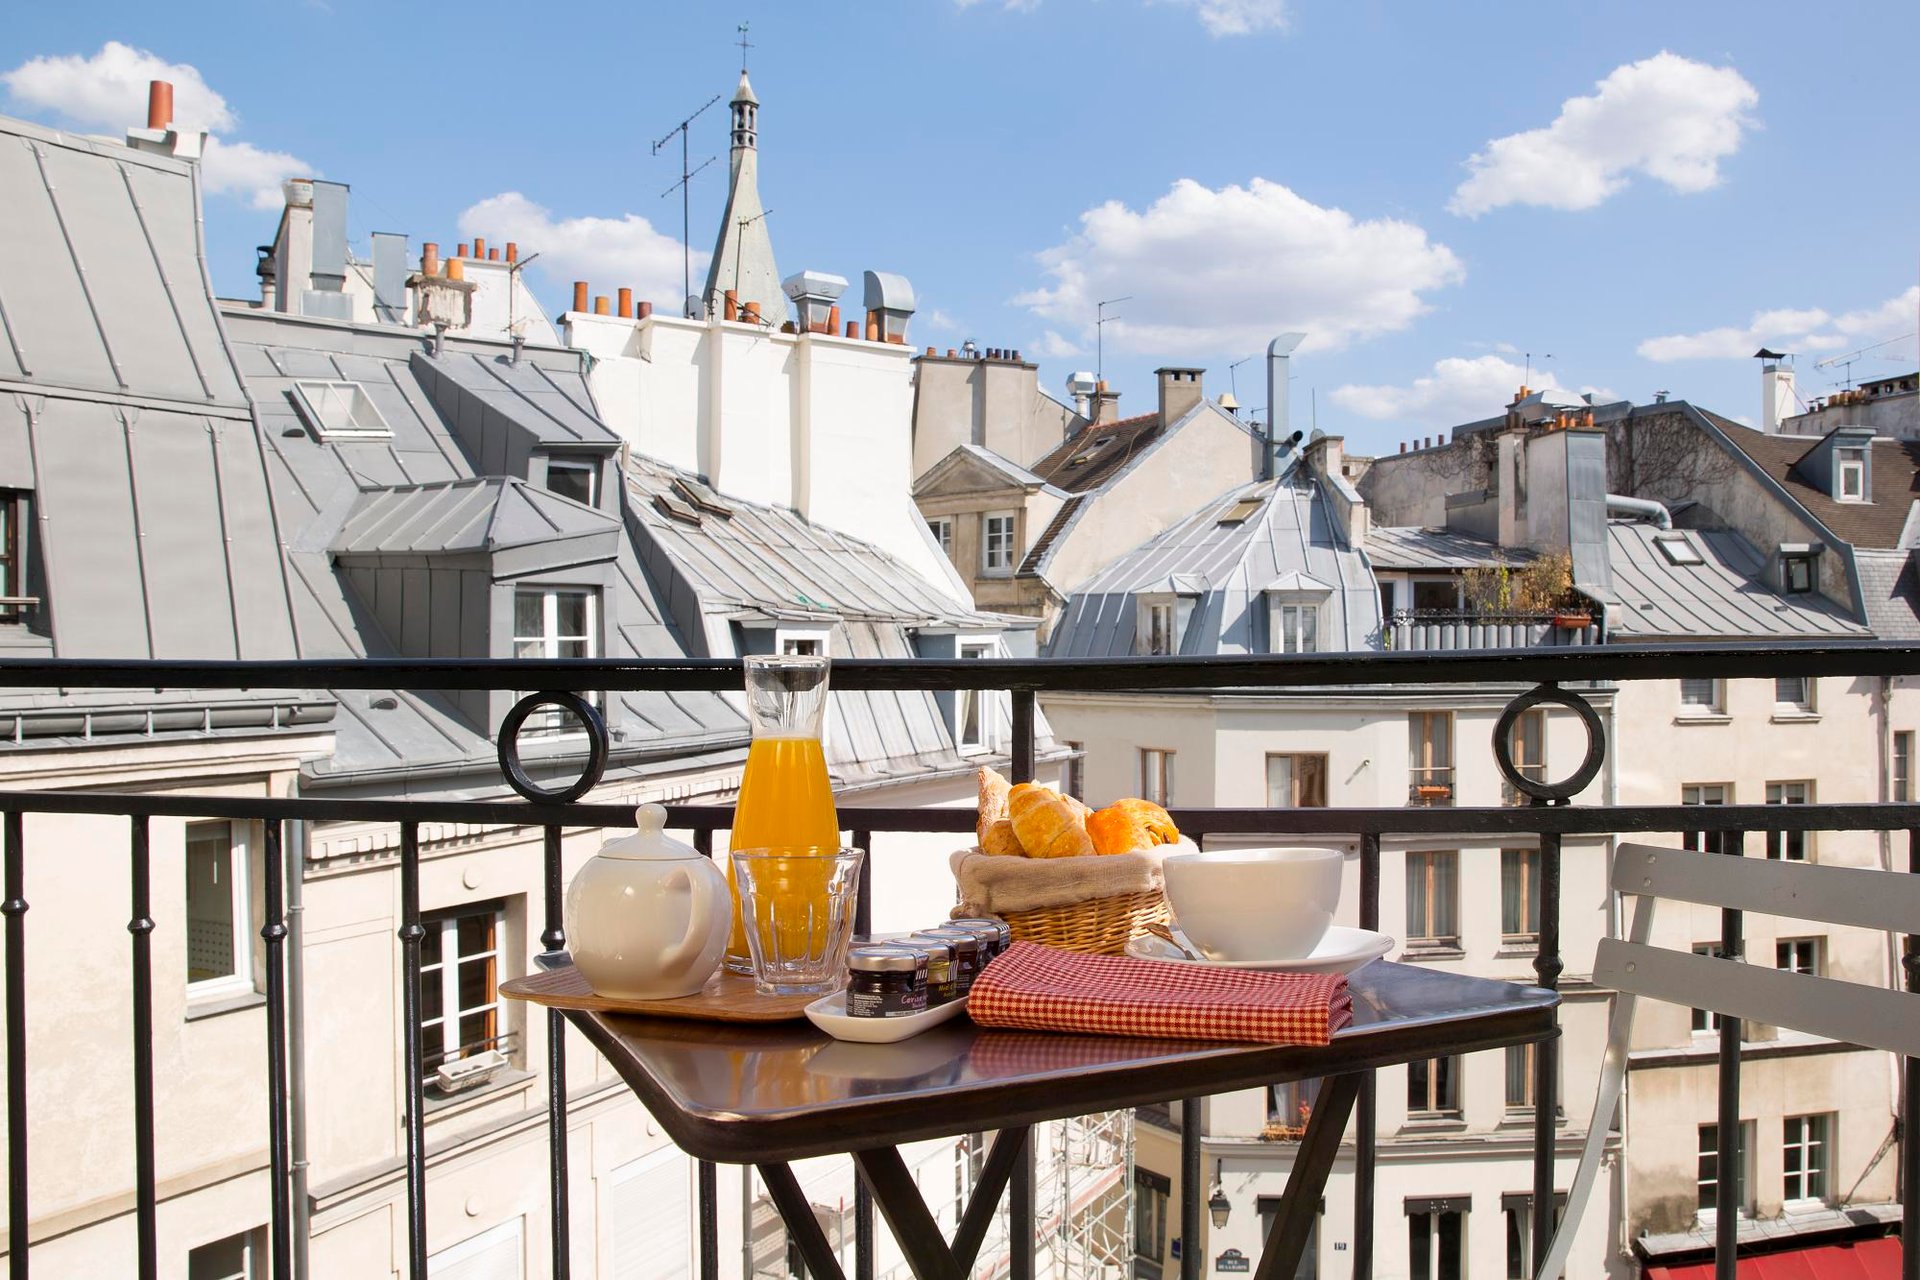 Hotel overlooking the rooftops of Paris